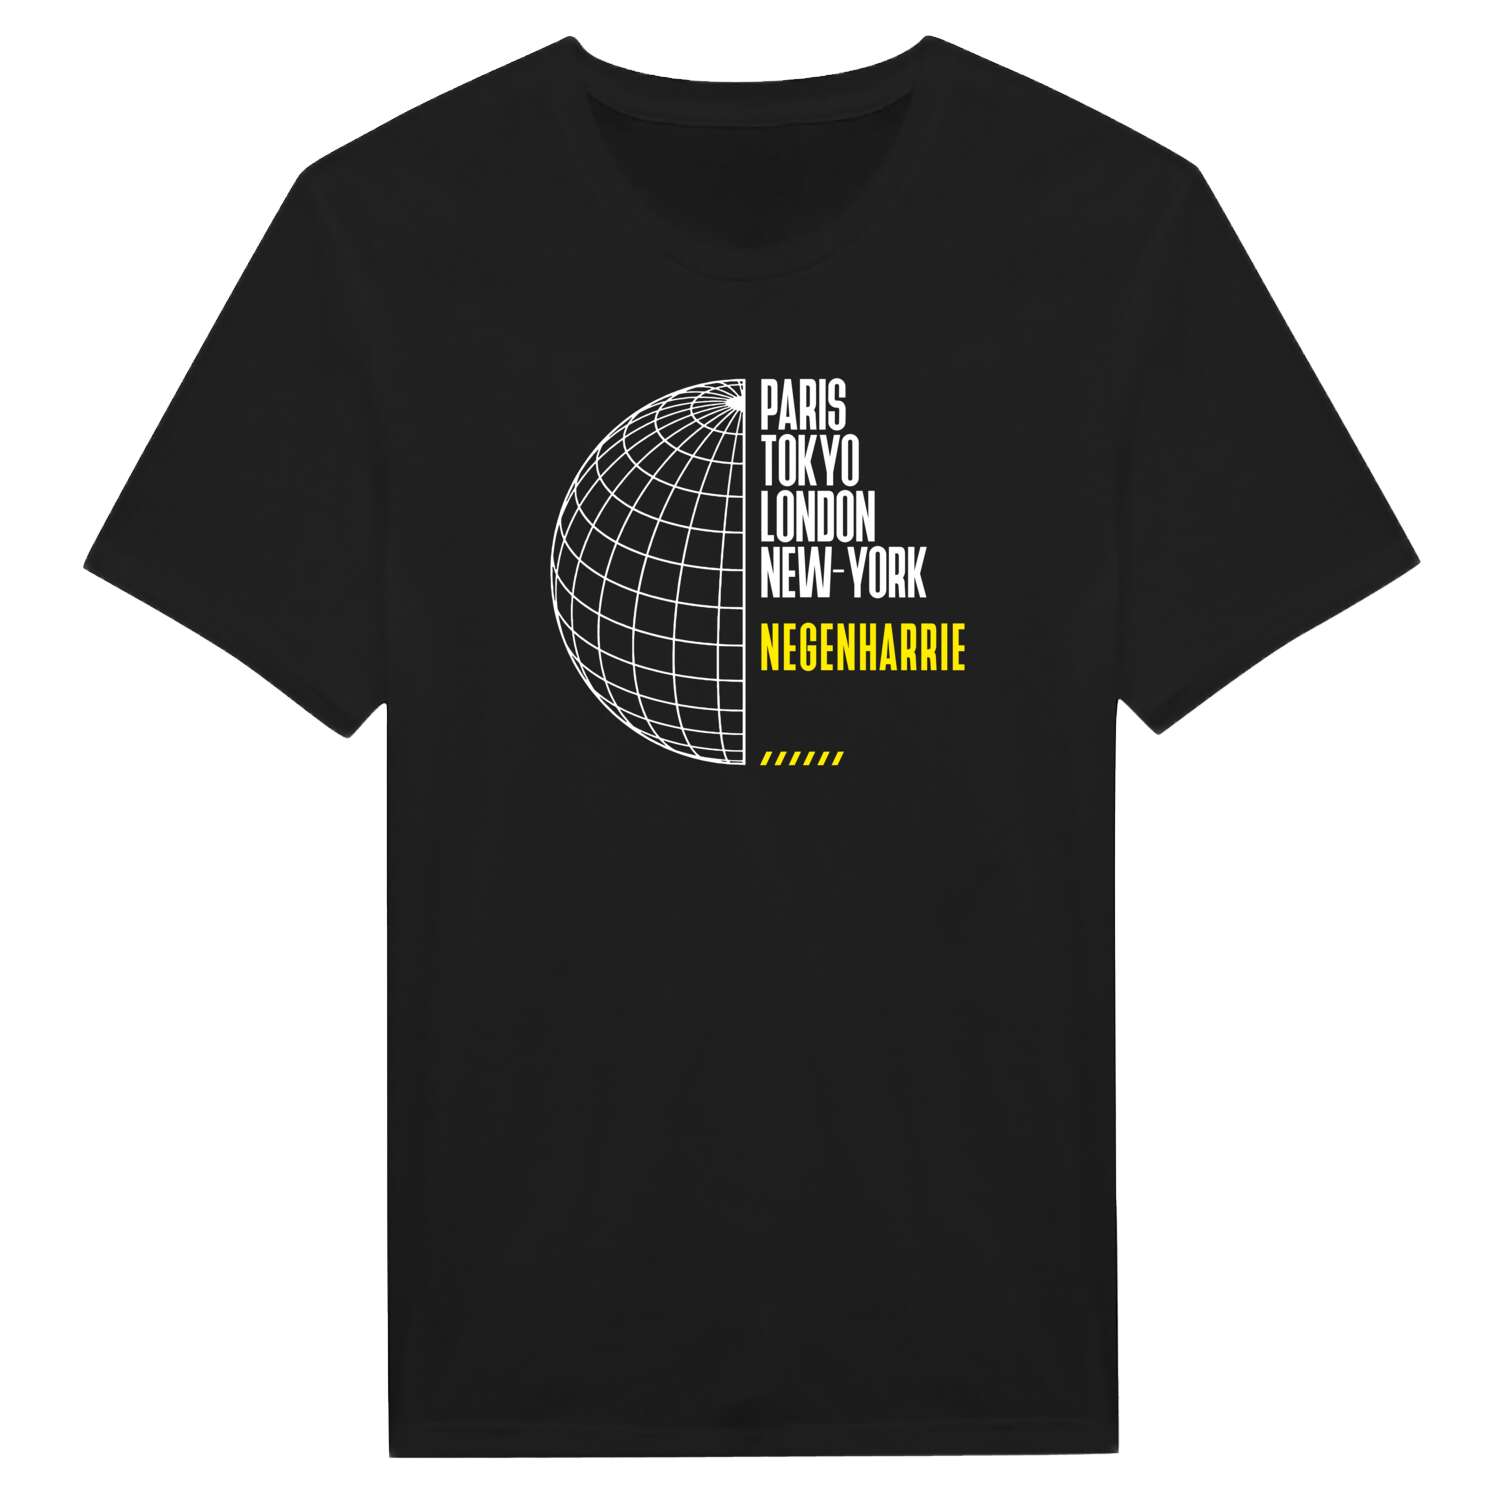 Negenharrie T-Shirt »Paris Tokyo London«